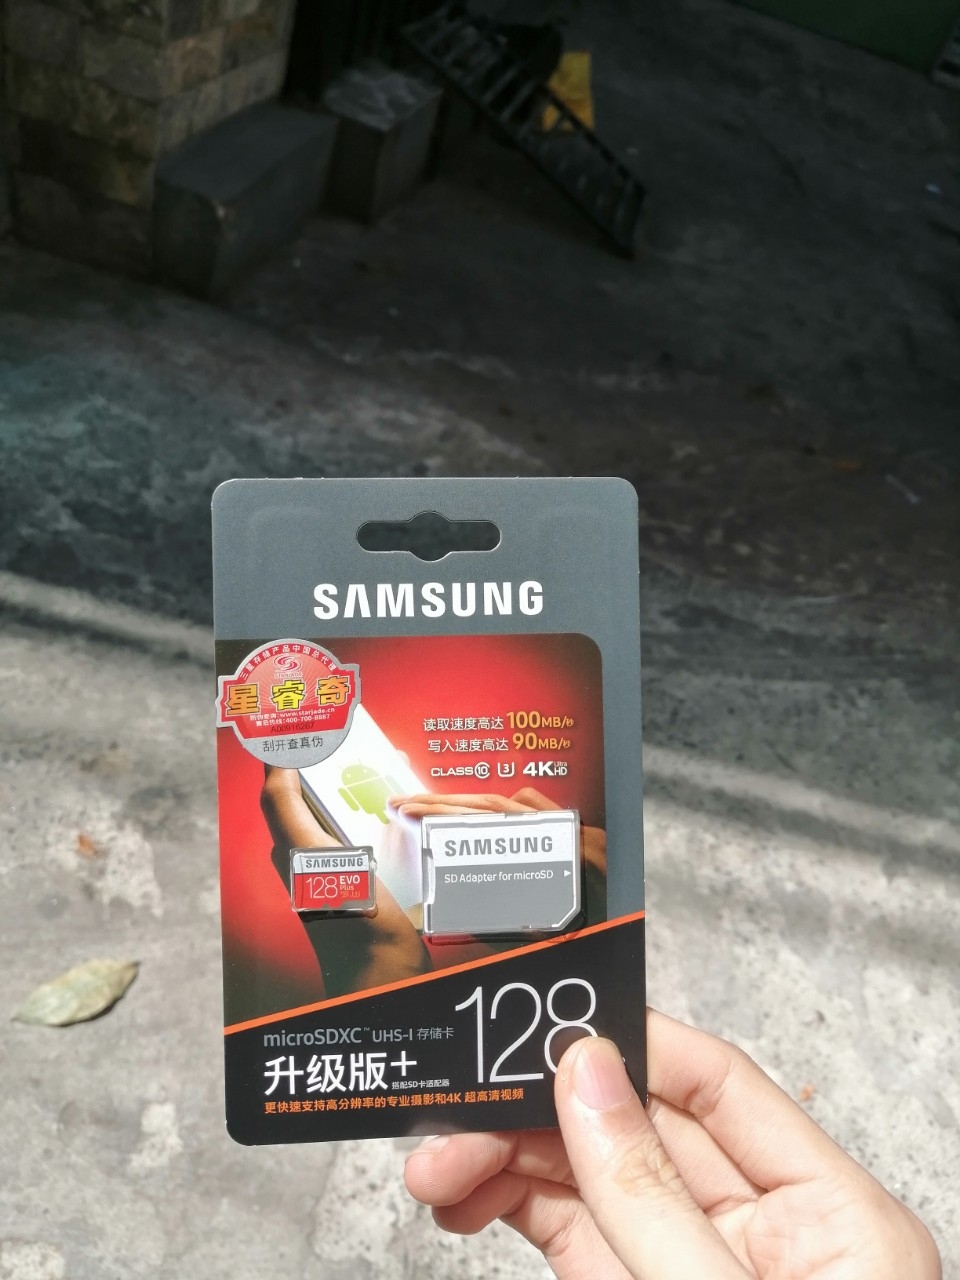 THẺ NHỚ SAMSUNG MICROSDXC 128GB EVO PLUS U3